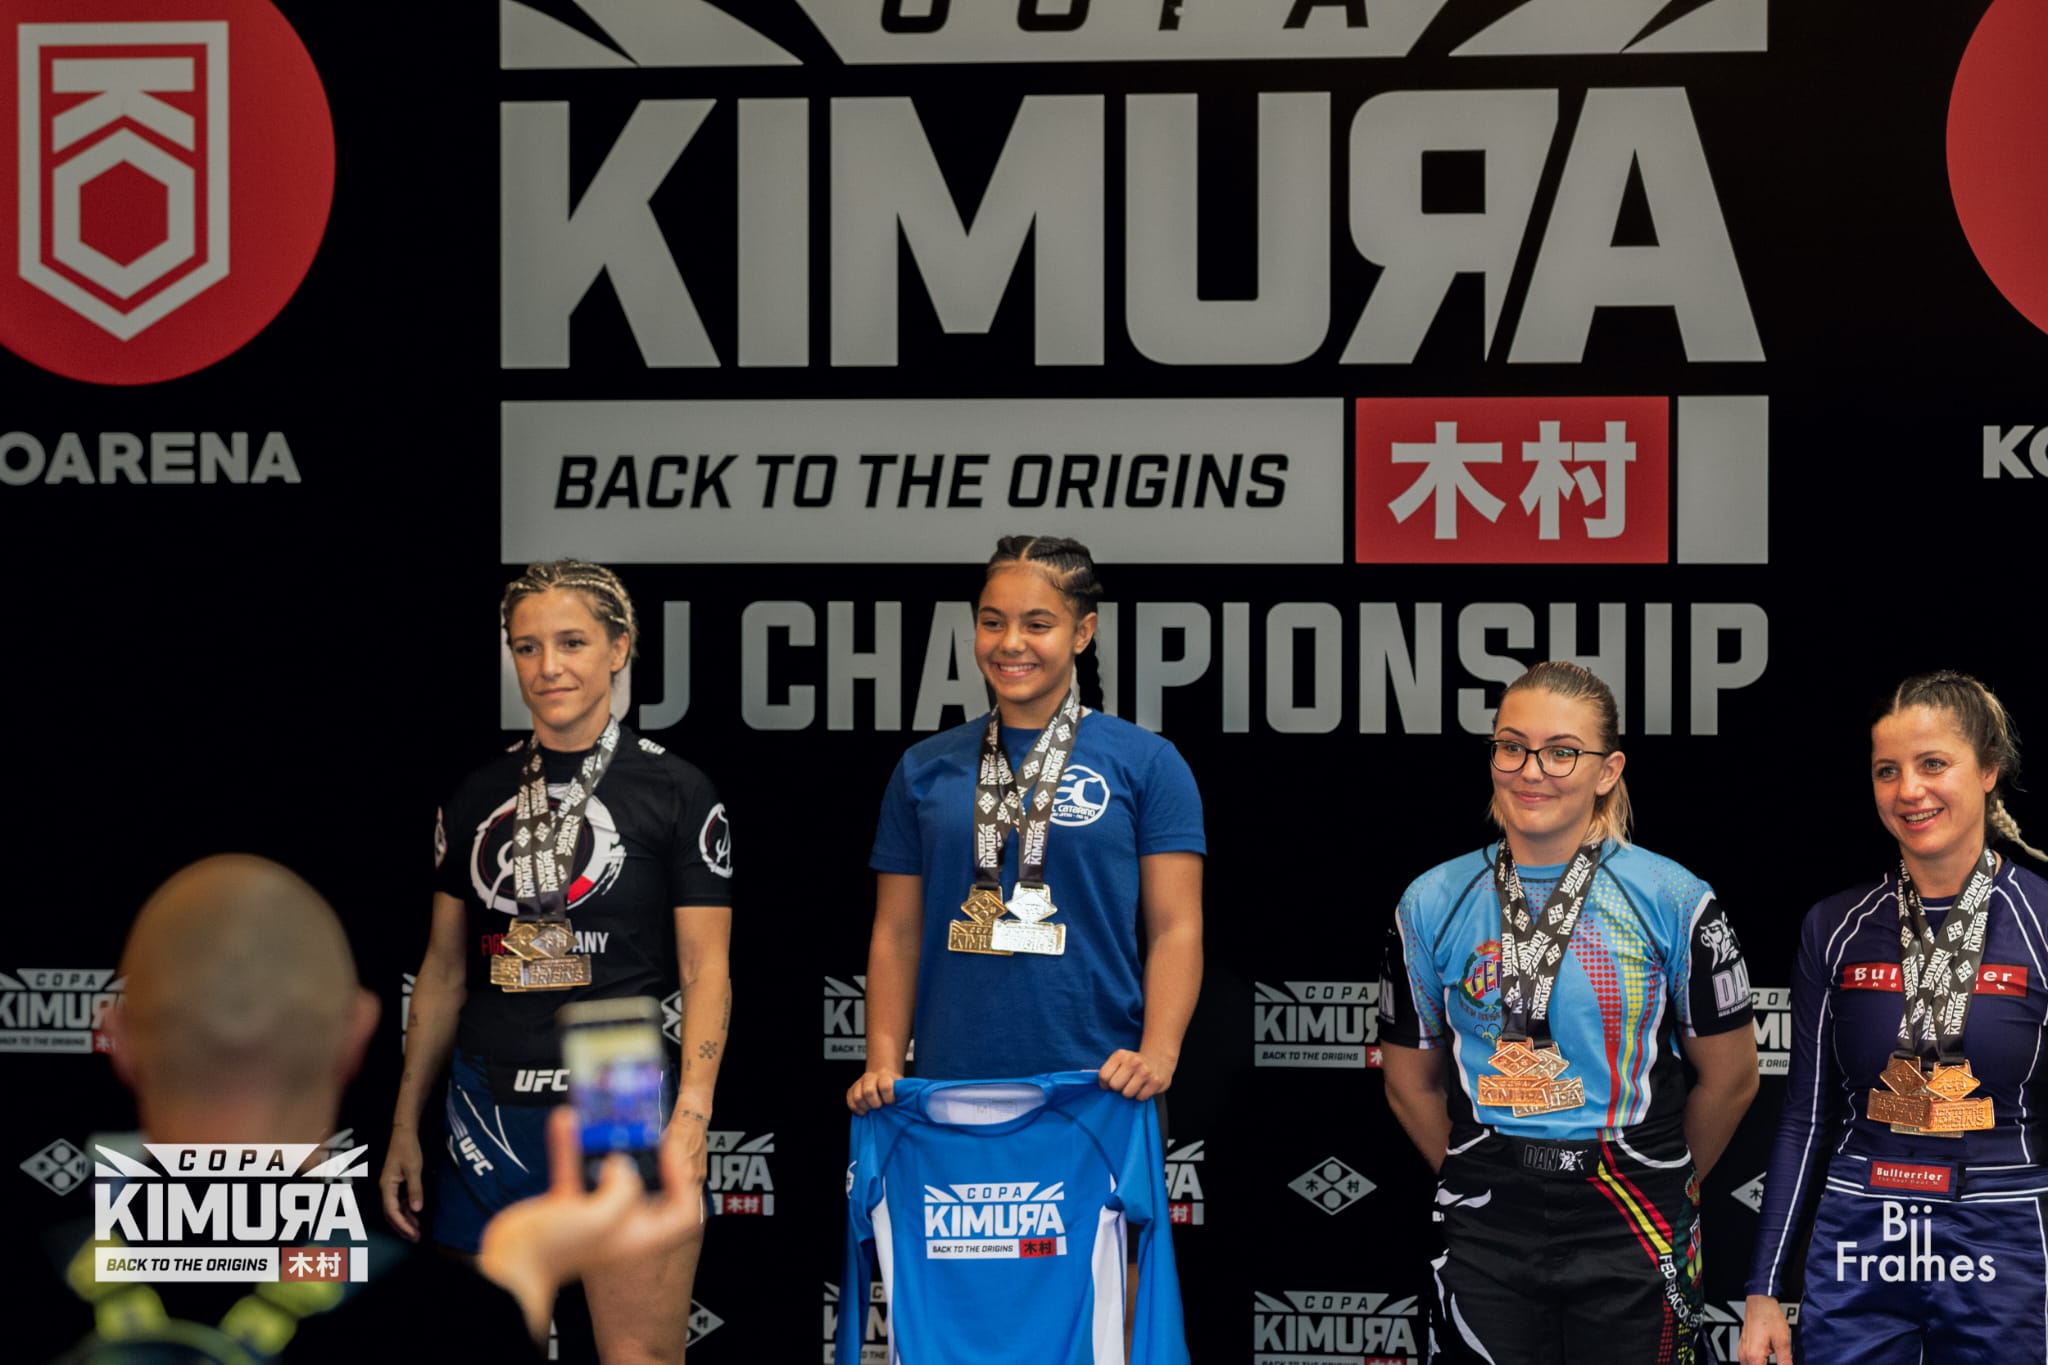 Luchadora o competidora de bjj kimura pro kids team niños de Kimura cup, Kimura Cup es la mejor promotora de eventos deportivos de bjj (brazilian jiu jitsu) y grappling en España y pronto en Europa